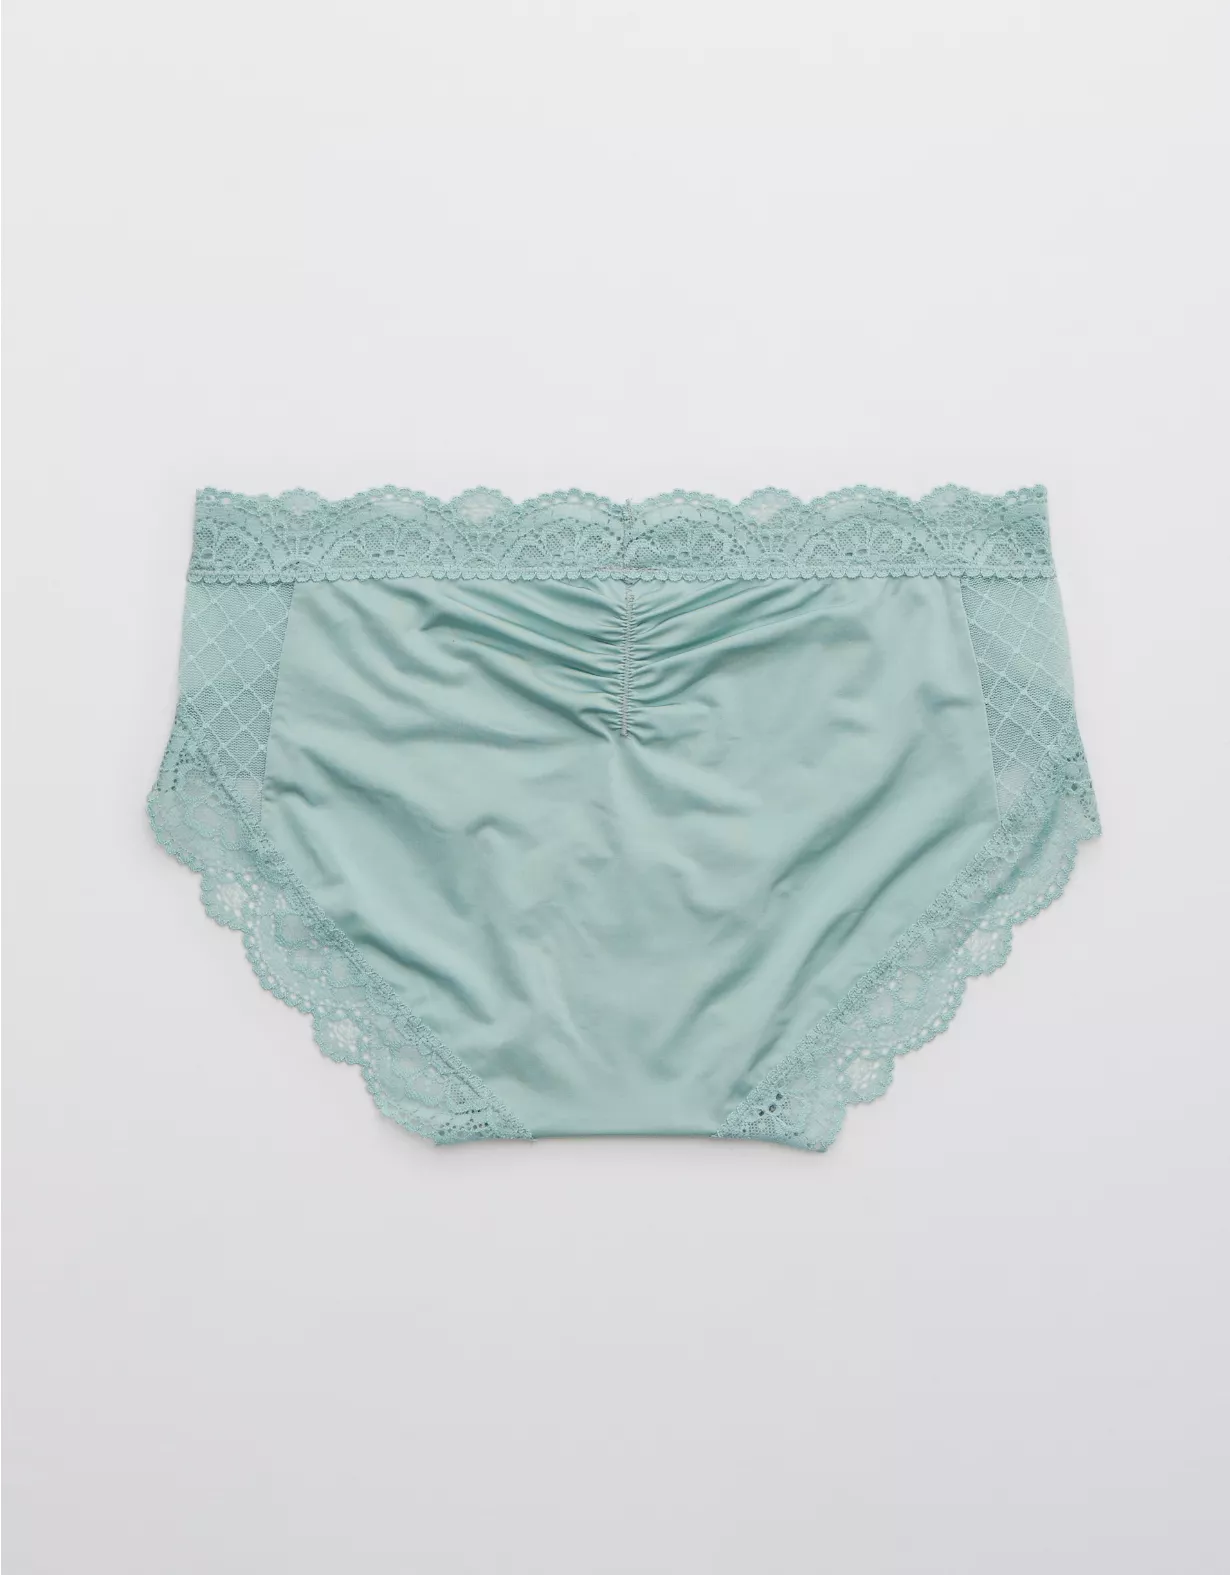 Aerie Slumber Party Lace Shine Boybrief Underwear